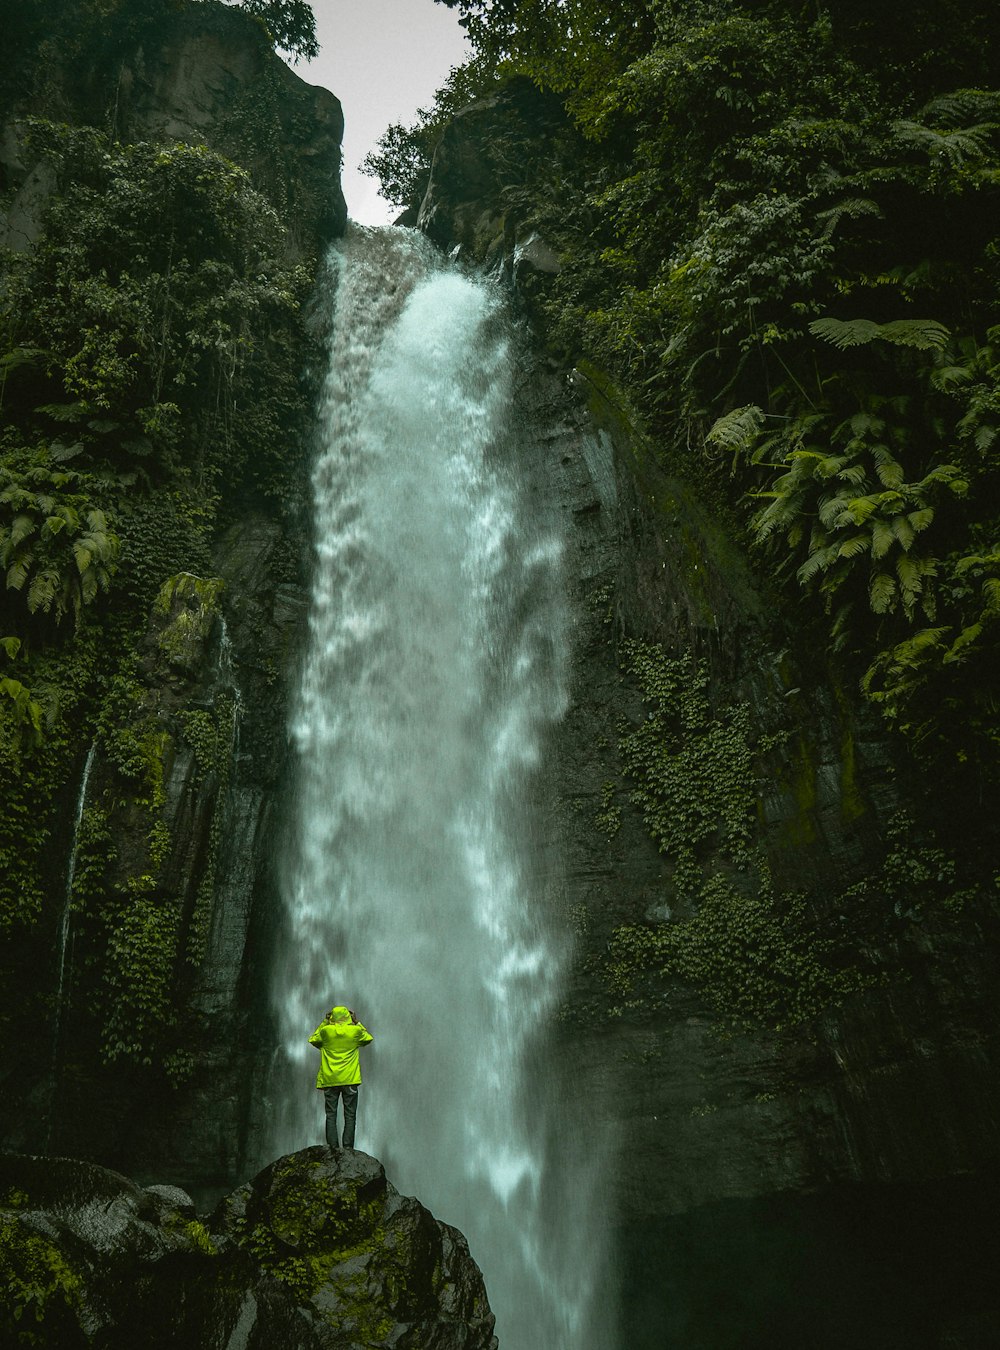 Homem em pé na rocha em frente a cachoeiras